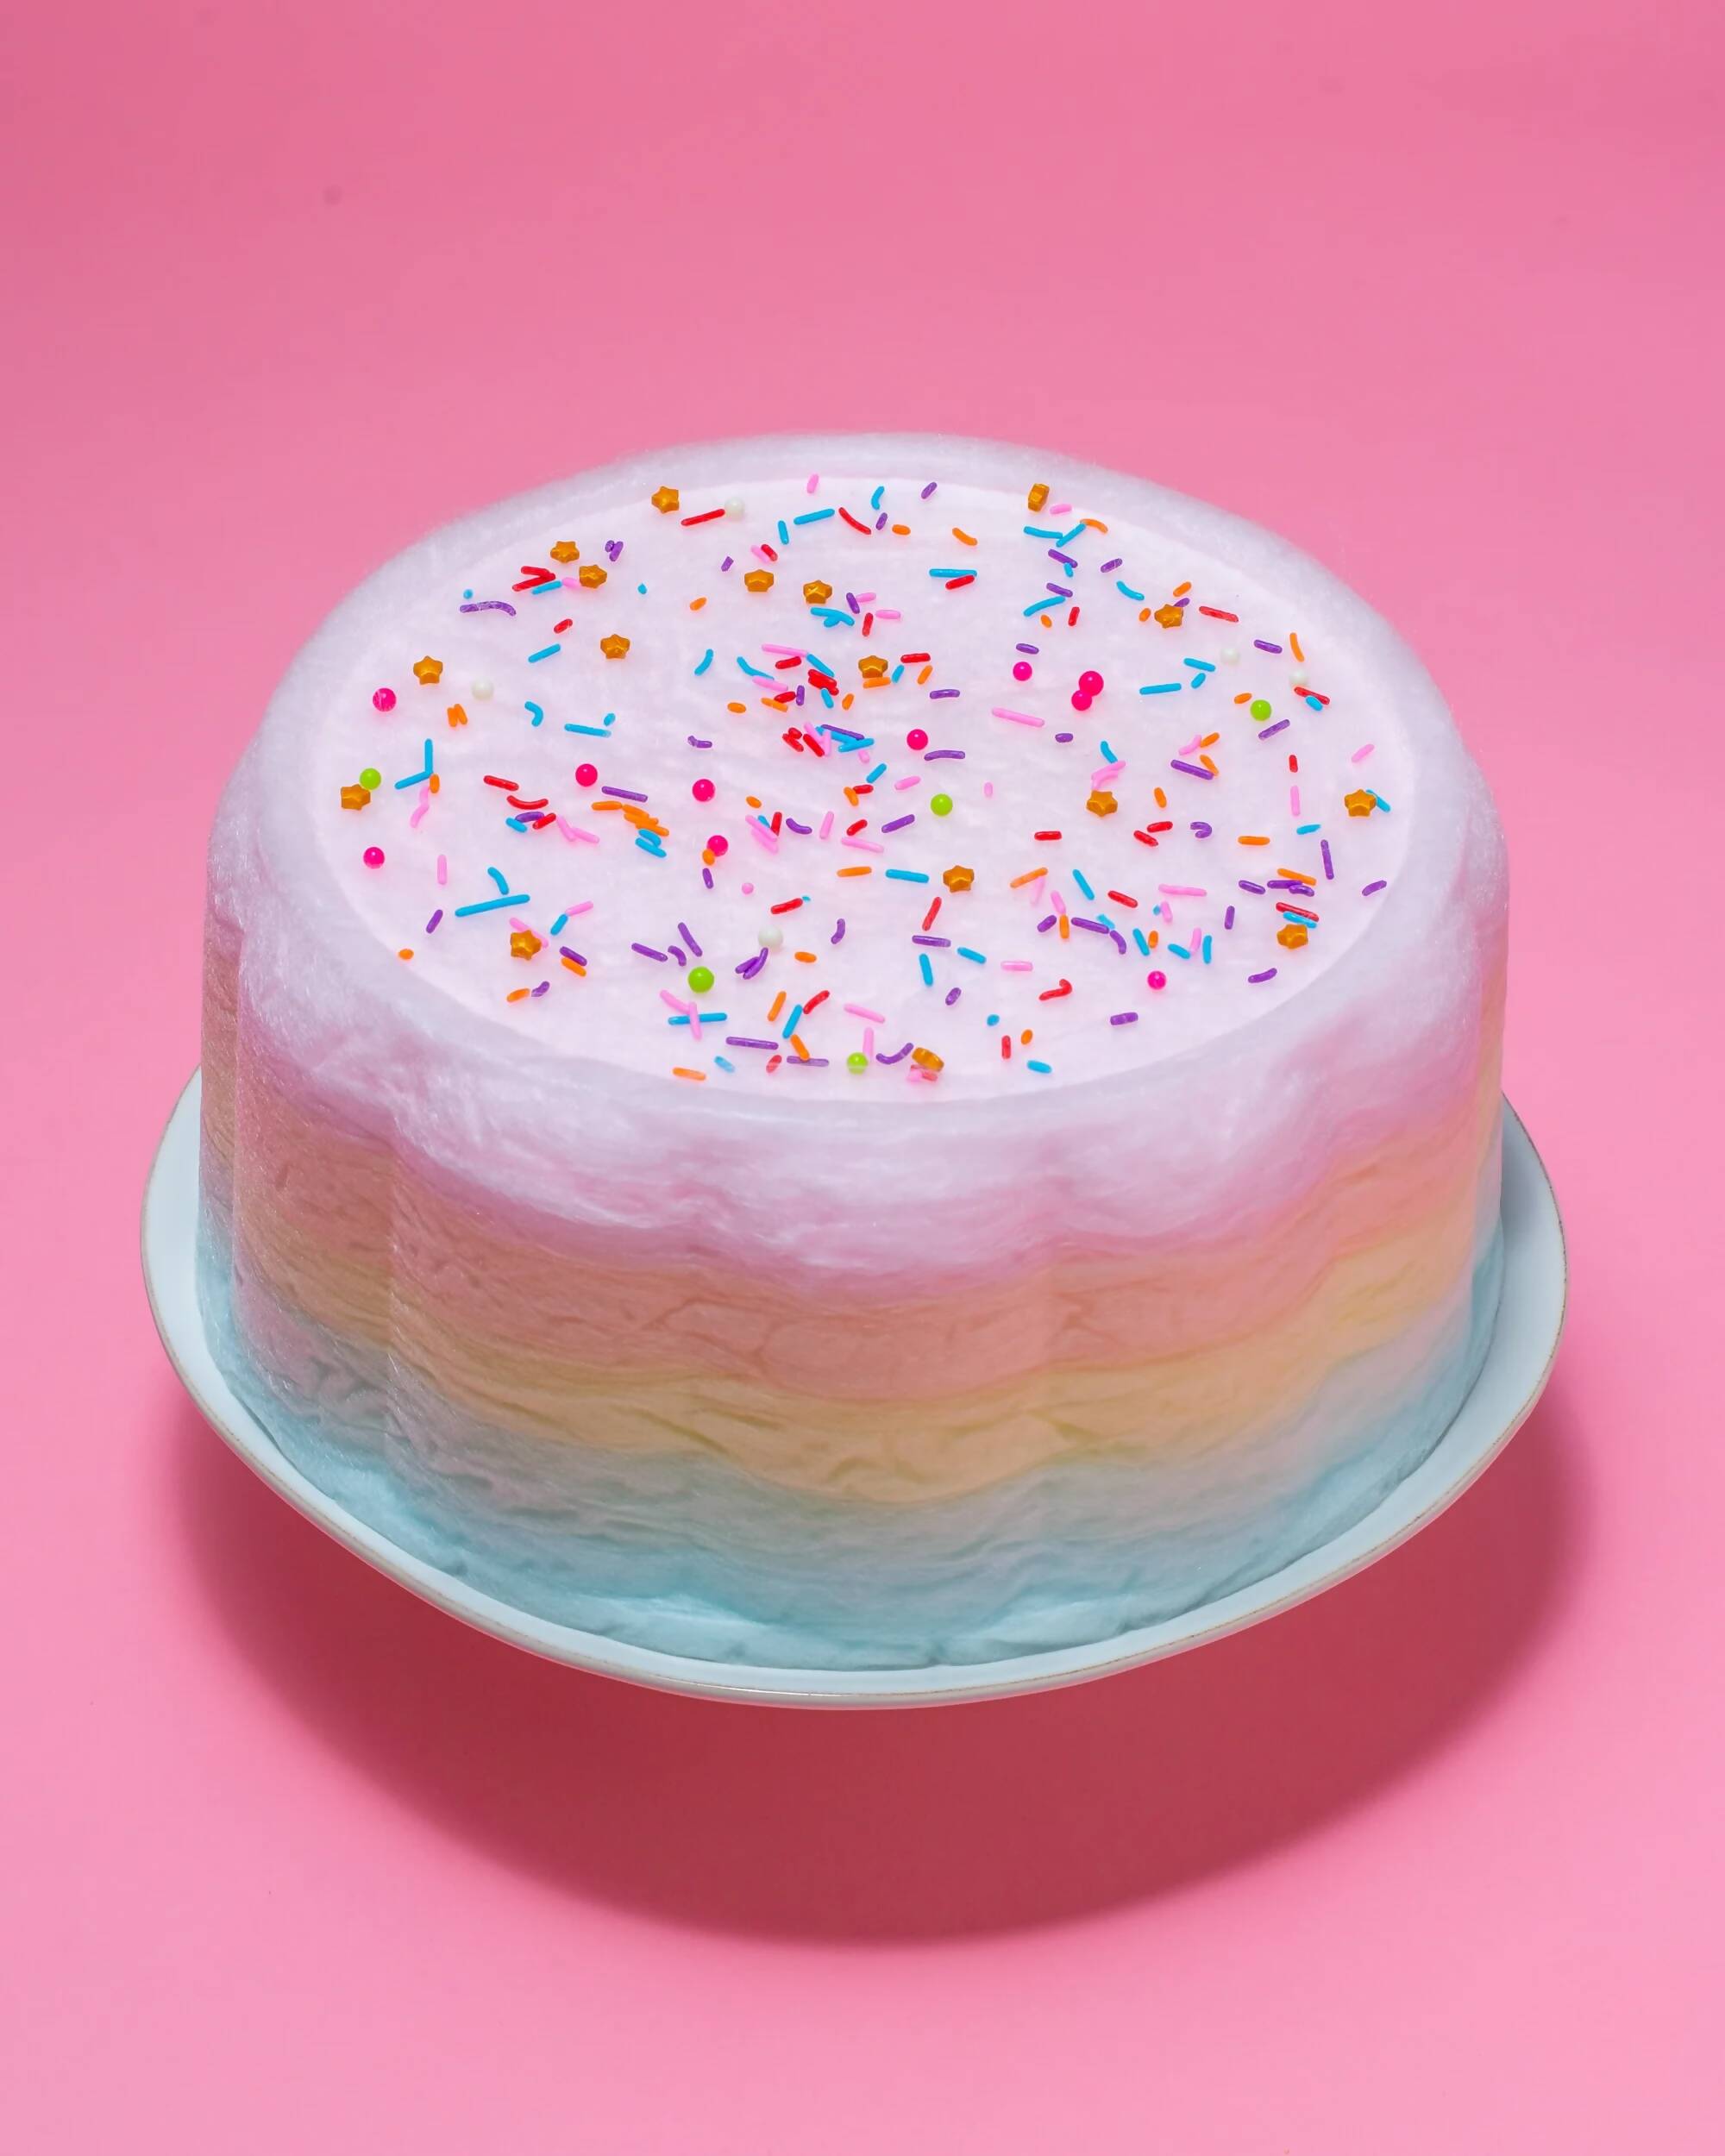 JUMBO RAINBOW FLOOF CAKE